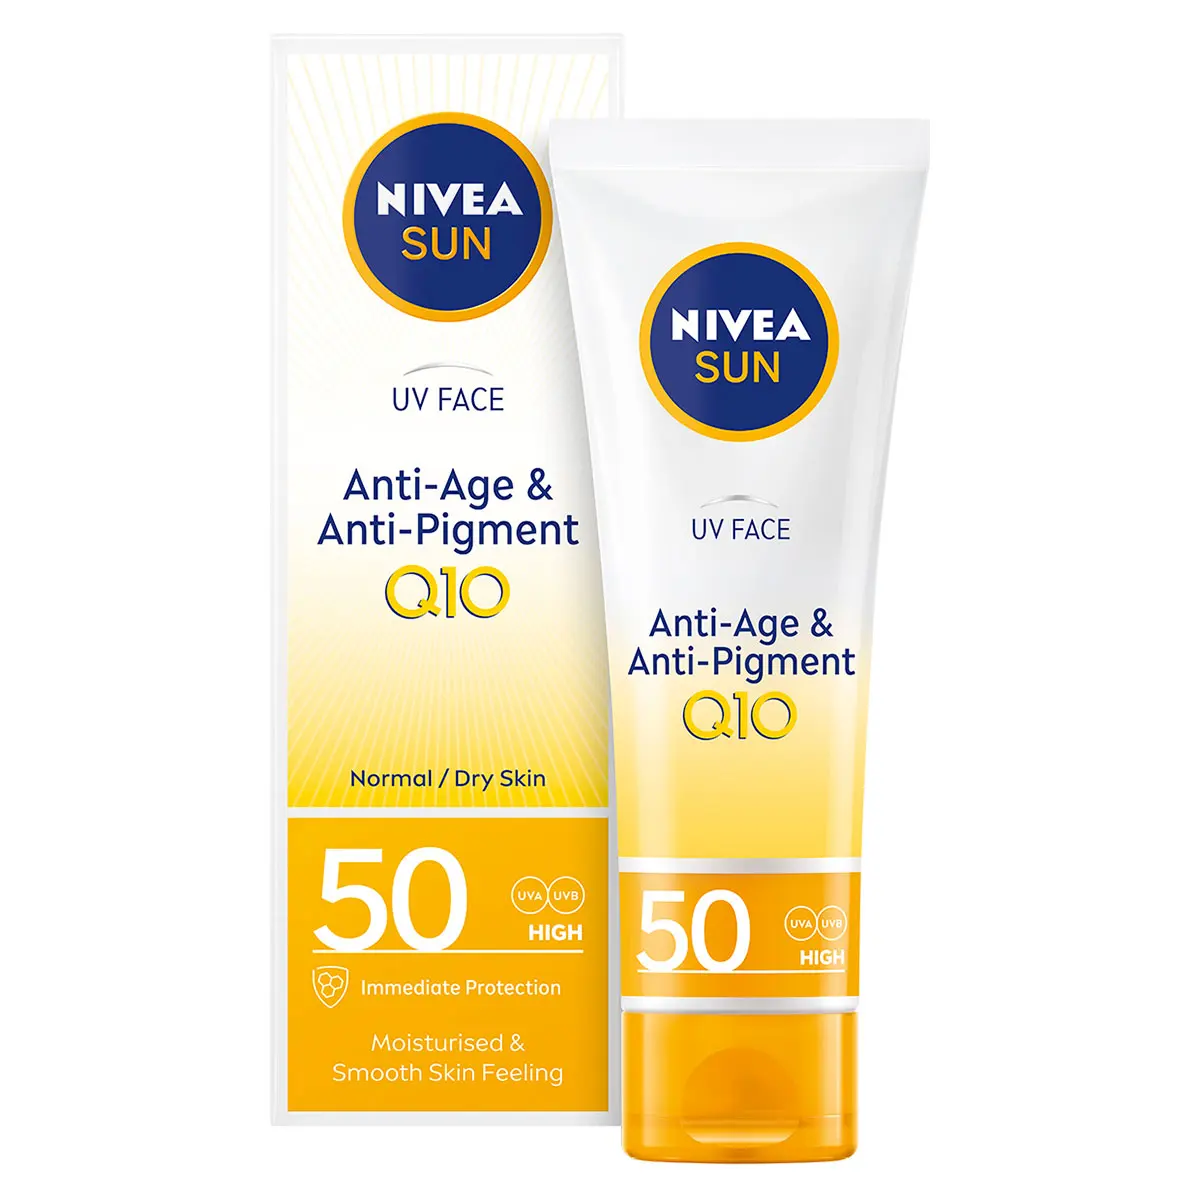 Nivea Sun UV Face Anti-Age & Anti-Pigment Sun Cream SPF50 50ml Discounts and Cashback